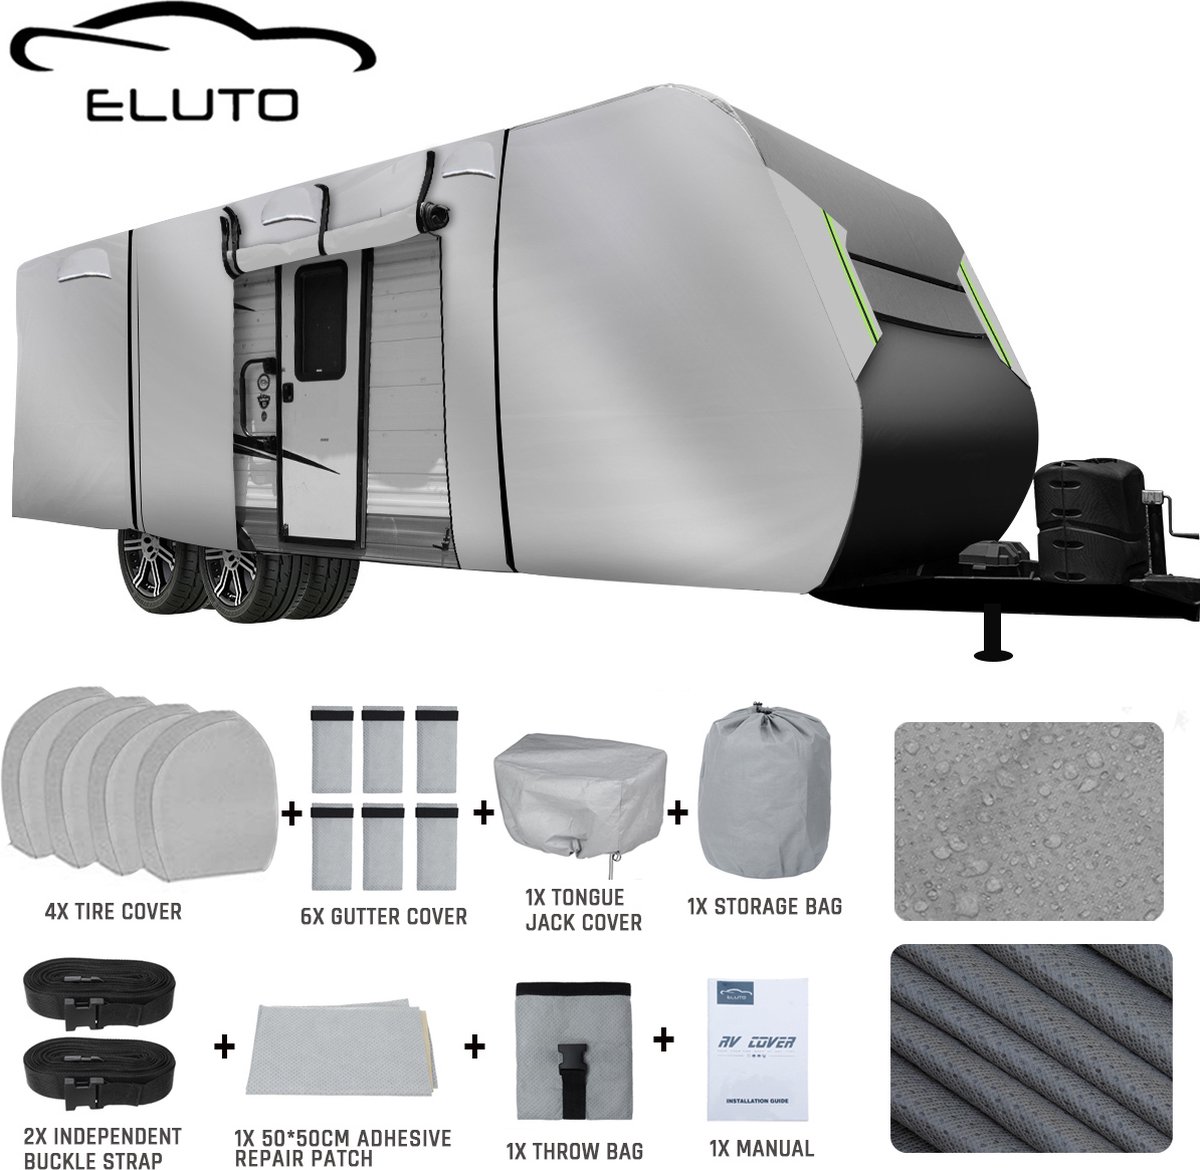 ELUTO Caravanhoes 610*267*274 CM - Waterdicht, UV-bescherming, sneeuwbestendig - Grijs